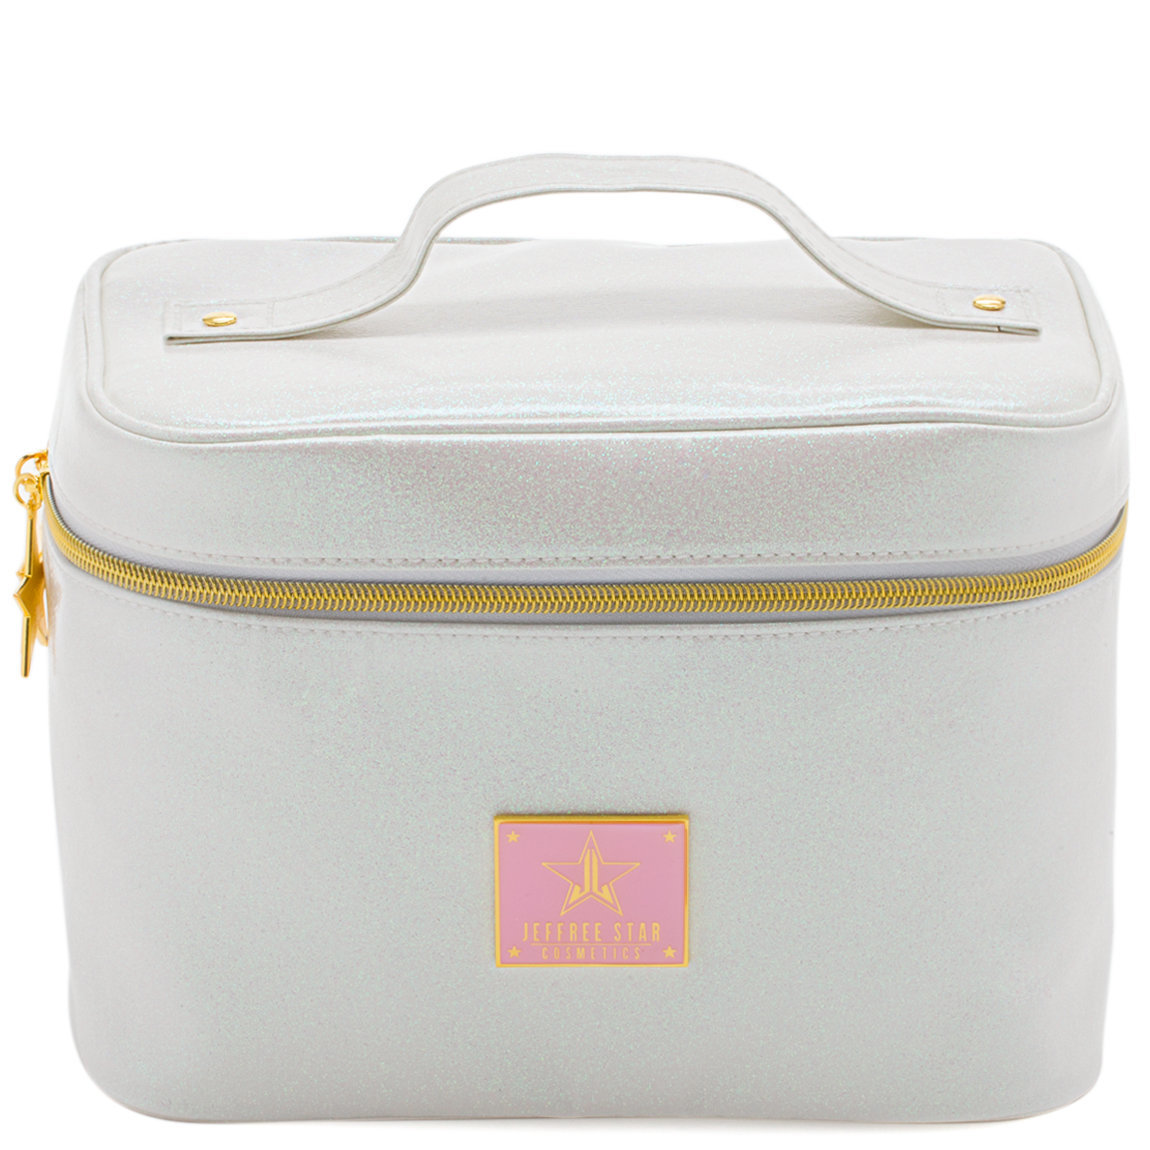 Jeffree Star Cosmetics Travel Makeup Bag Glitter White | Beautylish